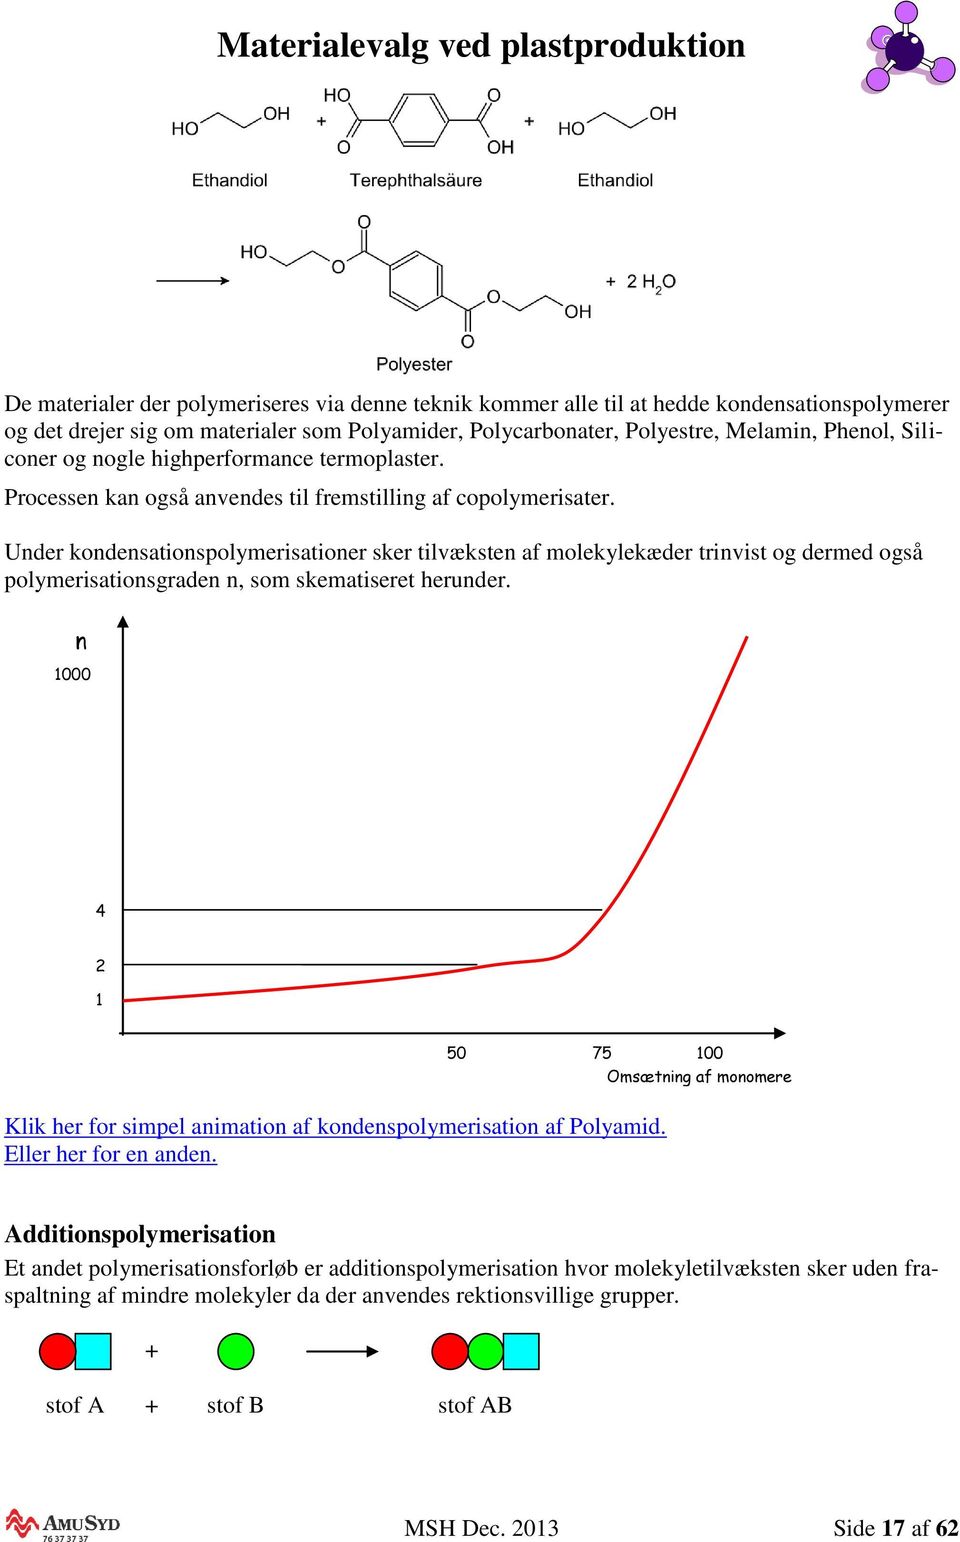 Under kondensationspolymerisationer sker tilvæksten af molekylekæder trinvist og dermed også polymerisationsgraden n, som skematiseret herunder.